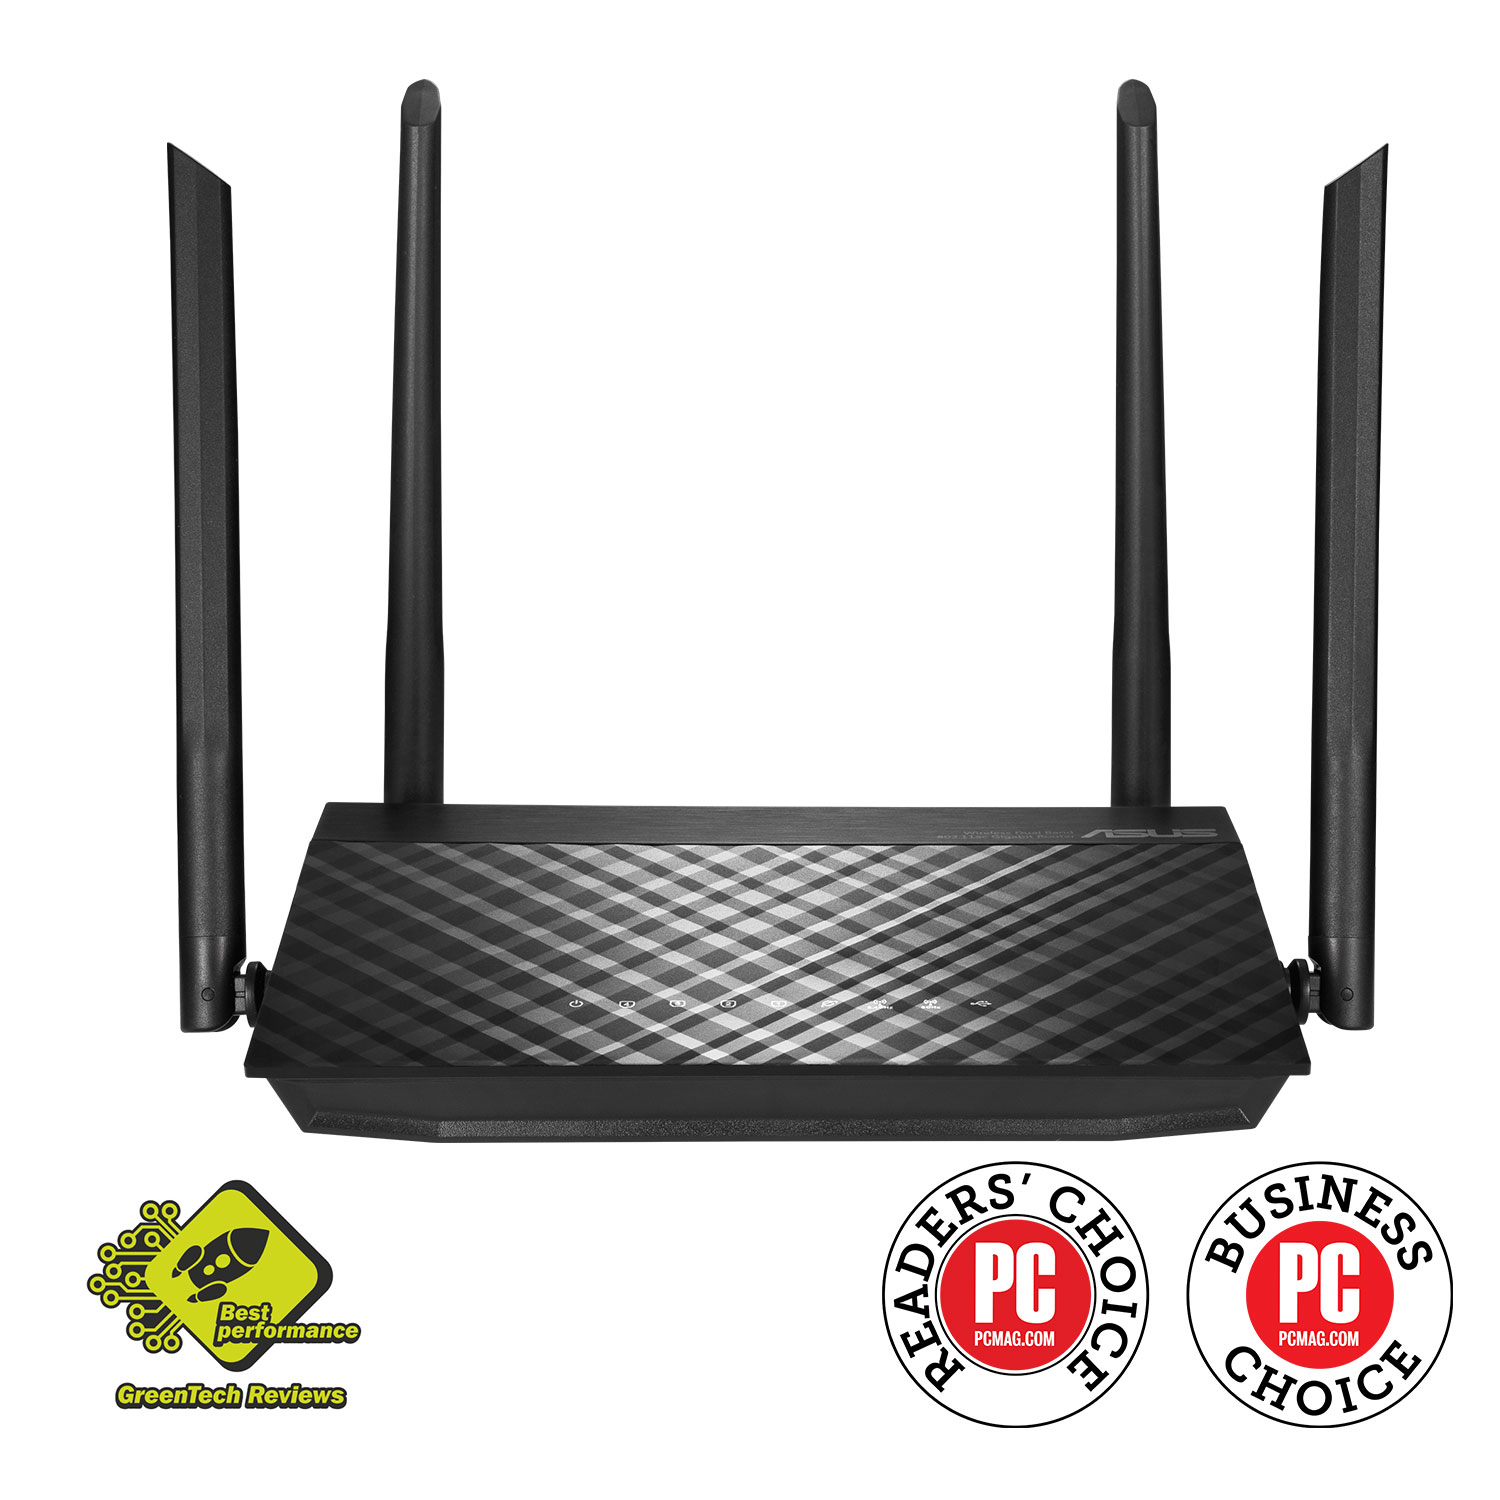 Wi-Fi роутер ASUS RT-AC59U, 802.11a/b/g/n/ac, 2.4 / 5 ГГц, до 1.47 Гбит/с, LAN 4x1 Гбит/с, WAN 1x1 Гбит/с, внешних антенн: 4x5dBi, 1шт.xUSB 2.0 (90IG0540-BO9400)